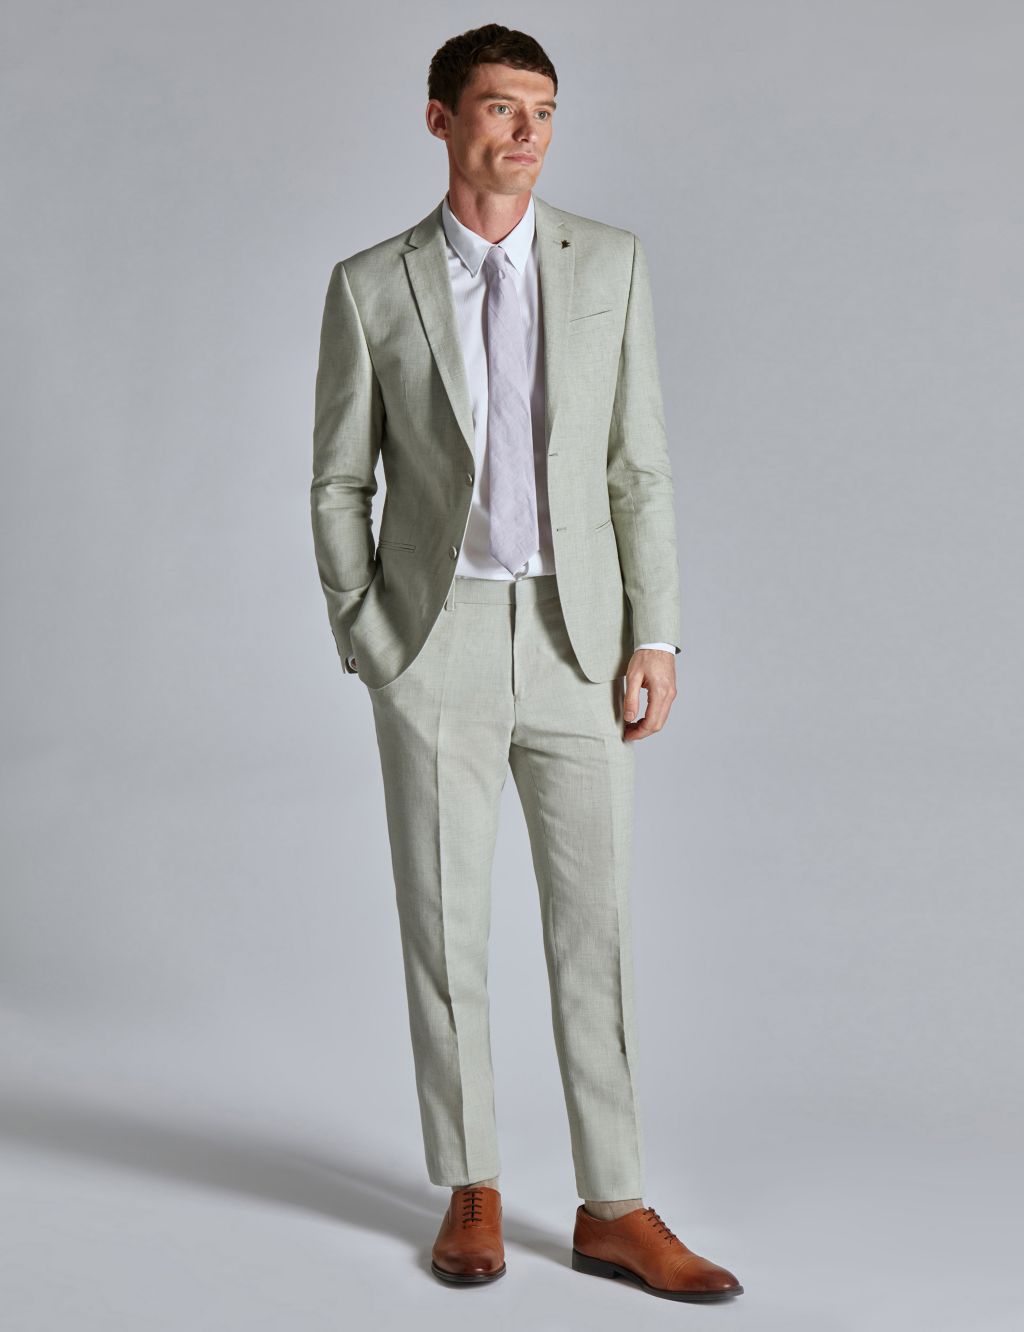 Men's Linen Suits